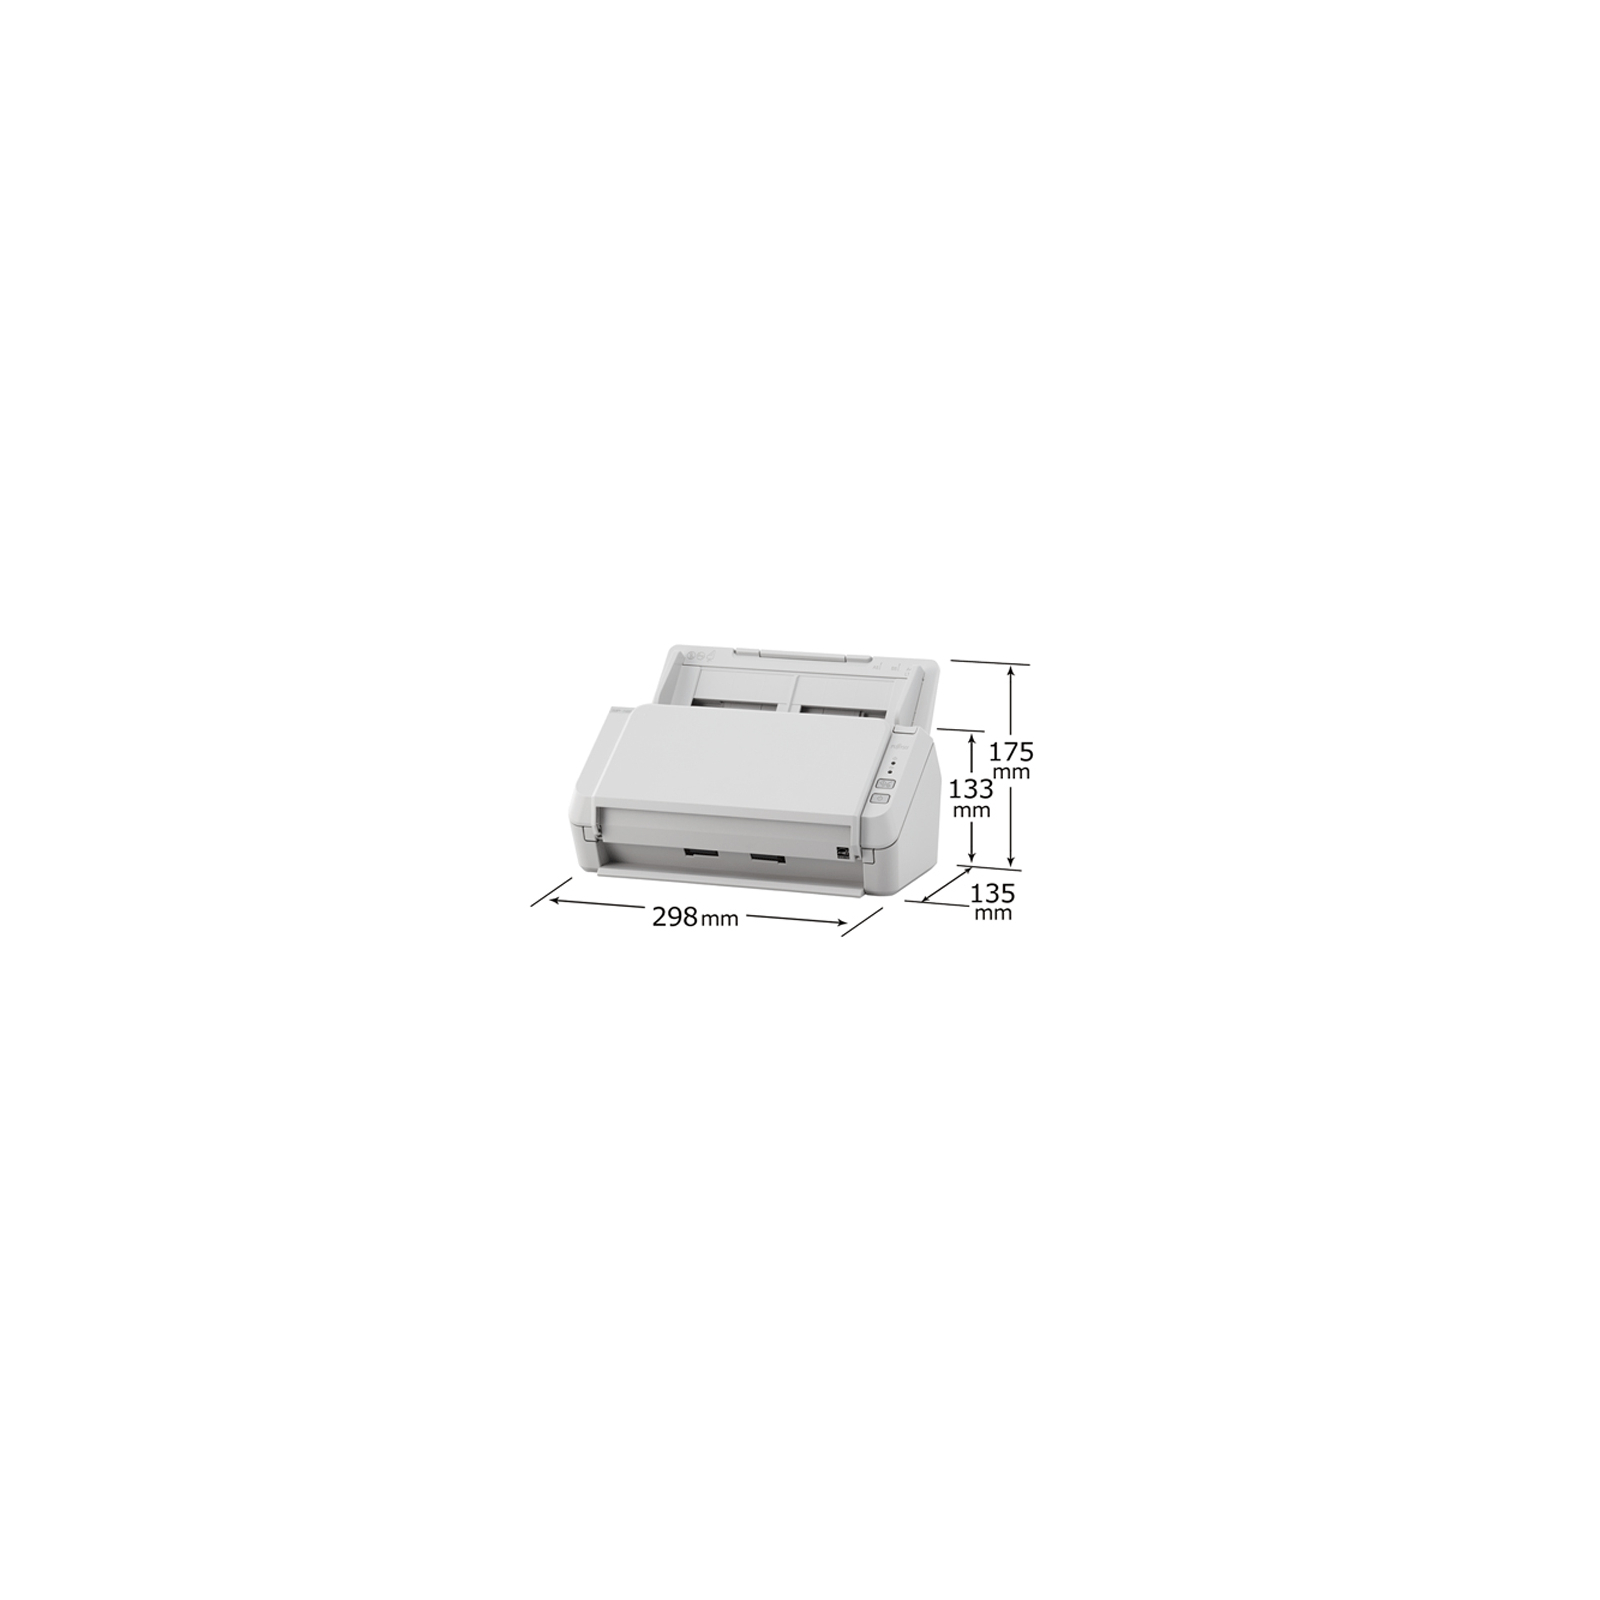 Сканер Fujitsu SP-1125 (PA03708-B011) изображение 6